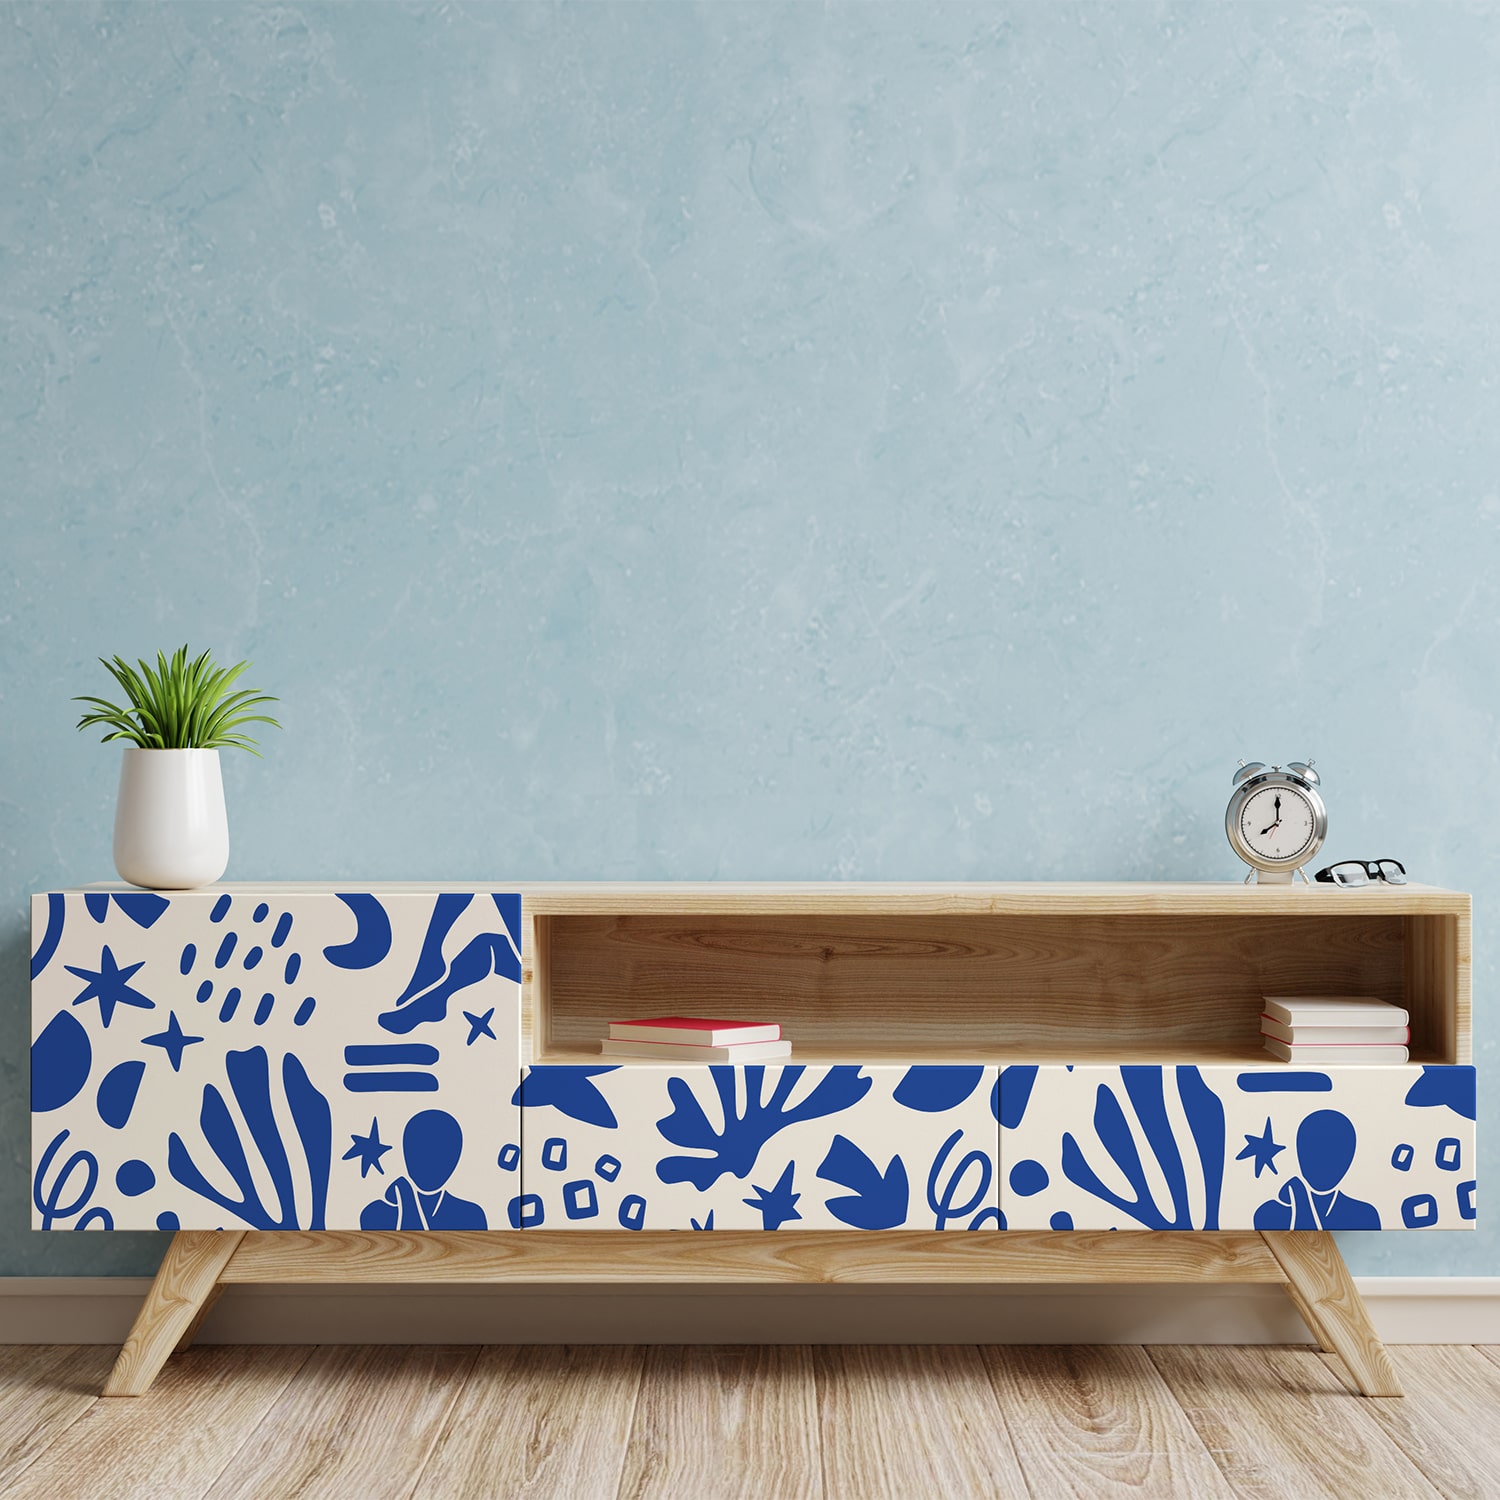 PP98-meuble-papier-peint-adhesif-decoratif-revetement-vinyle-motifs-inspiré-style-Matisse-féminin-renovation-meuble-mur-min